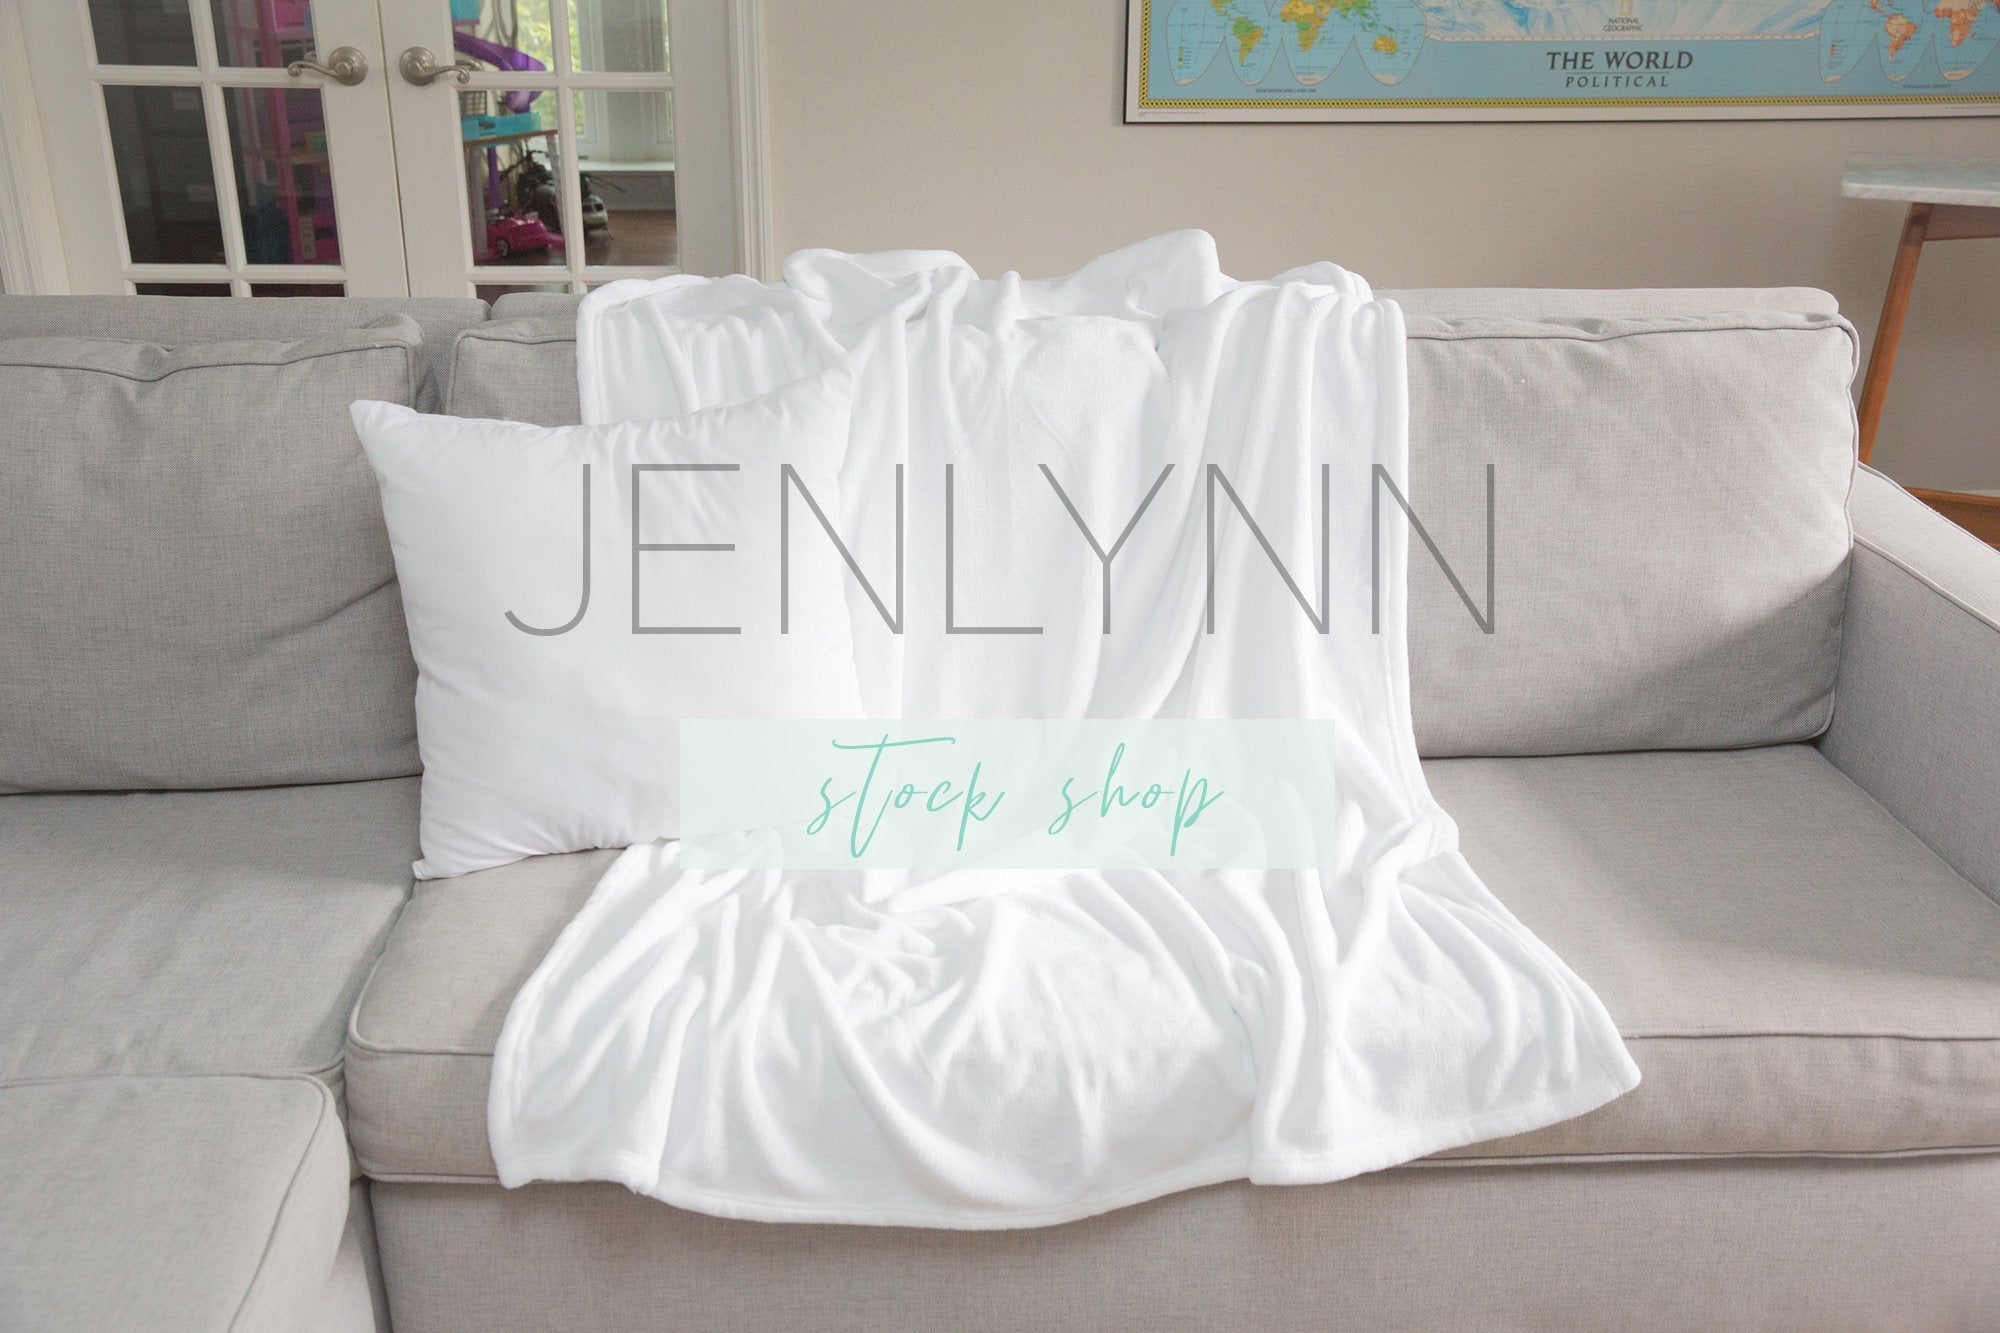 Download Minky Blanket Mockup Pillow Mockup 12 Jenlynn Stock Shop